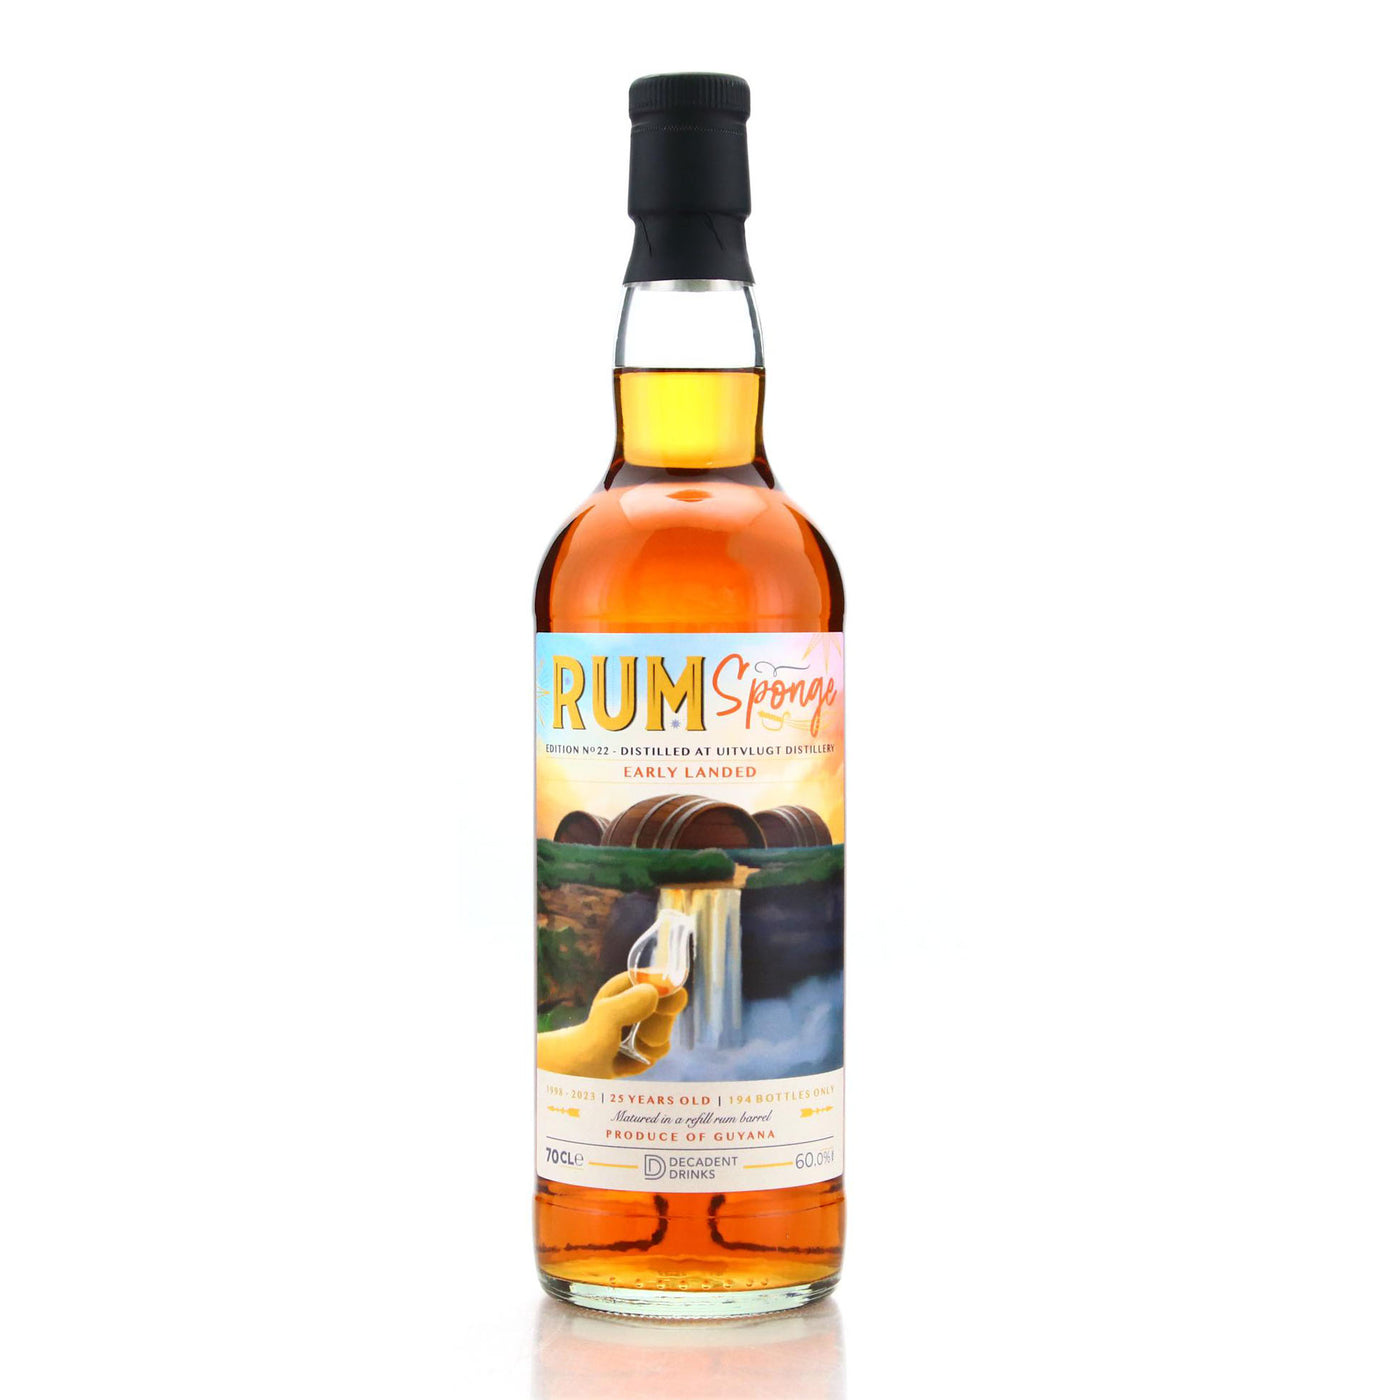 Rum Sponge #22 Uitvlugt 25 Years Old 70cl